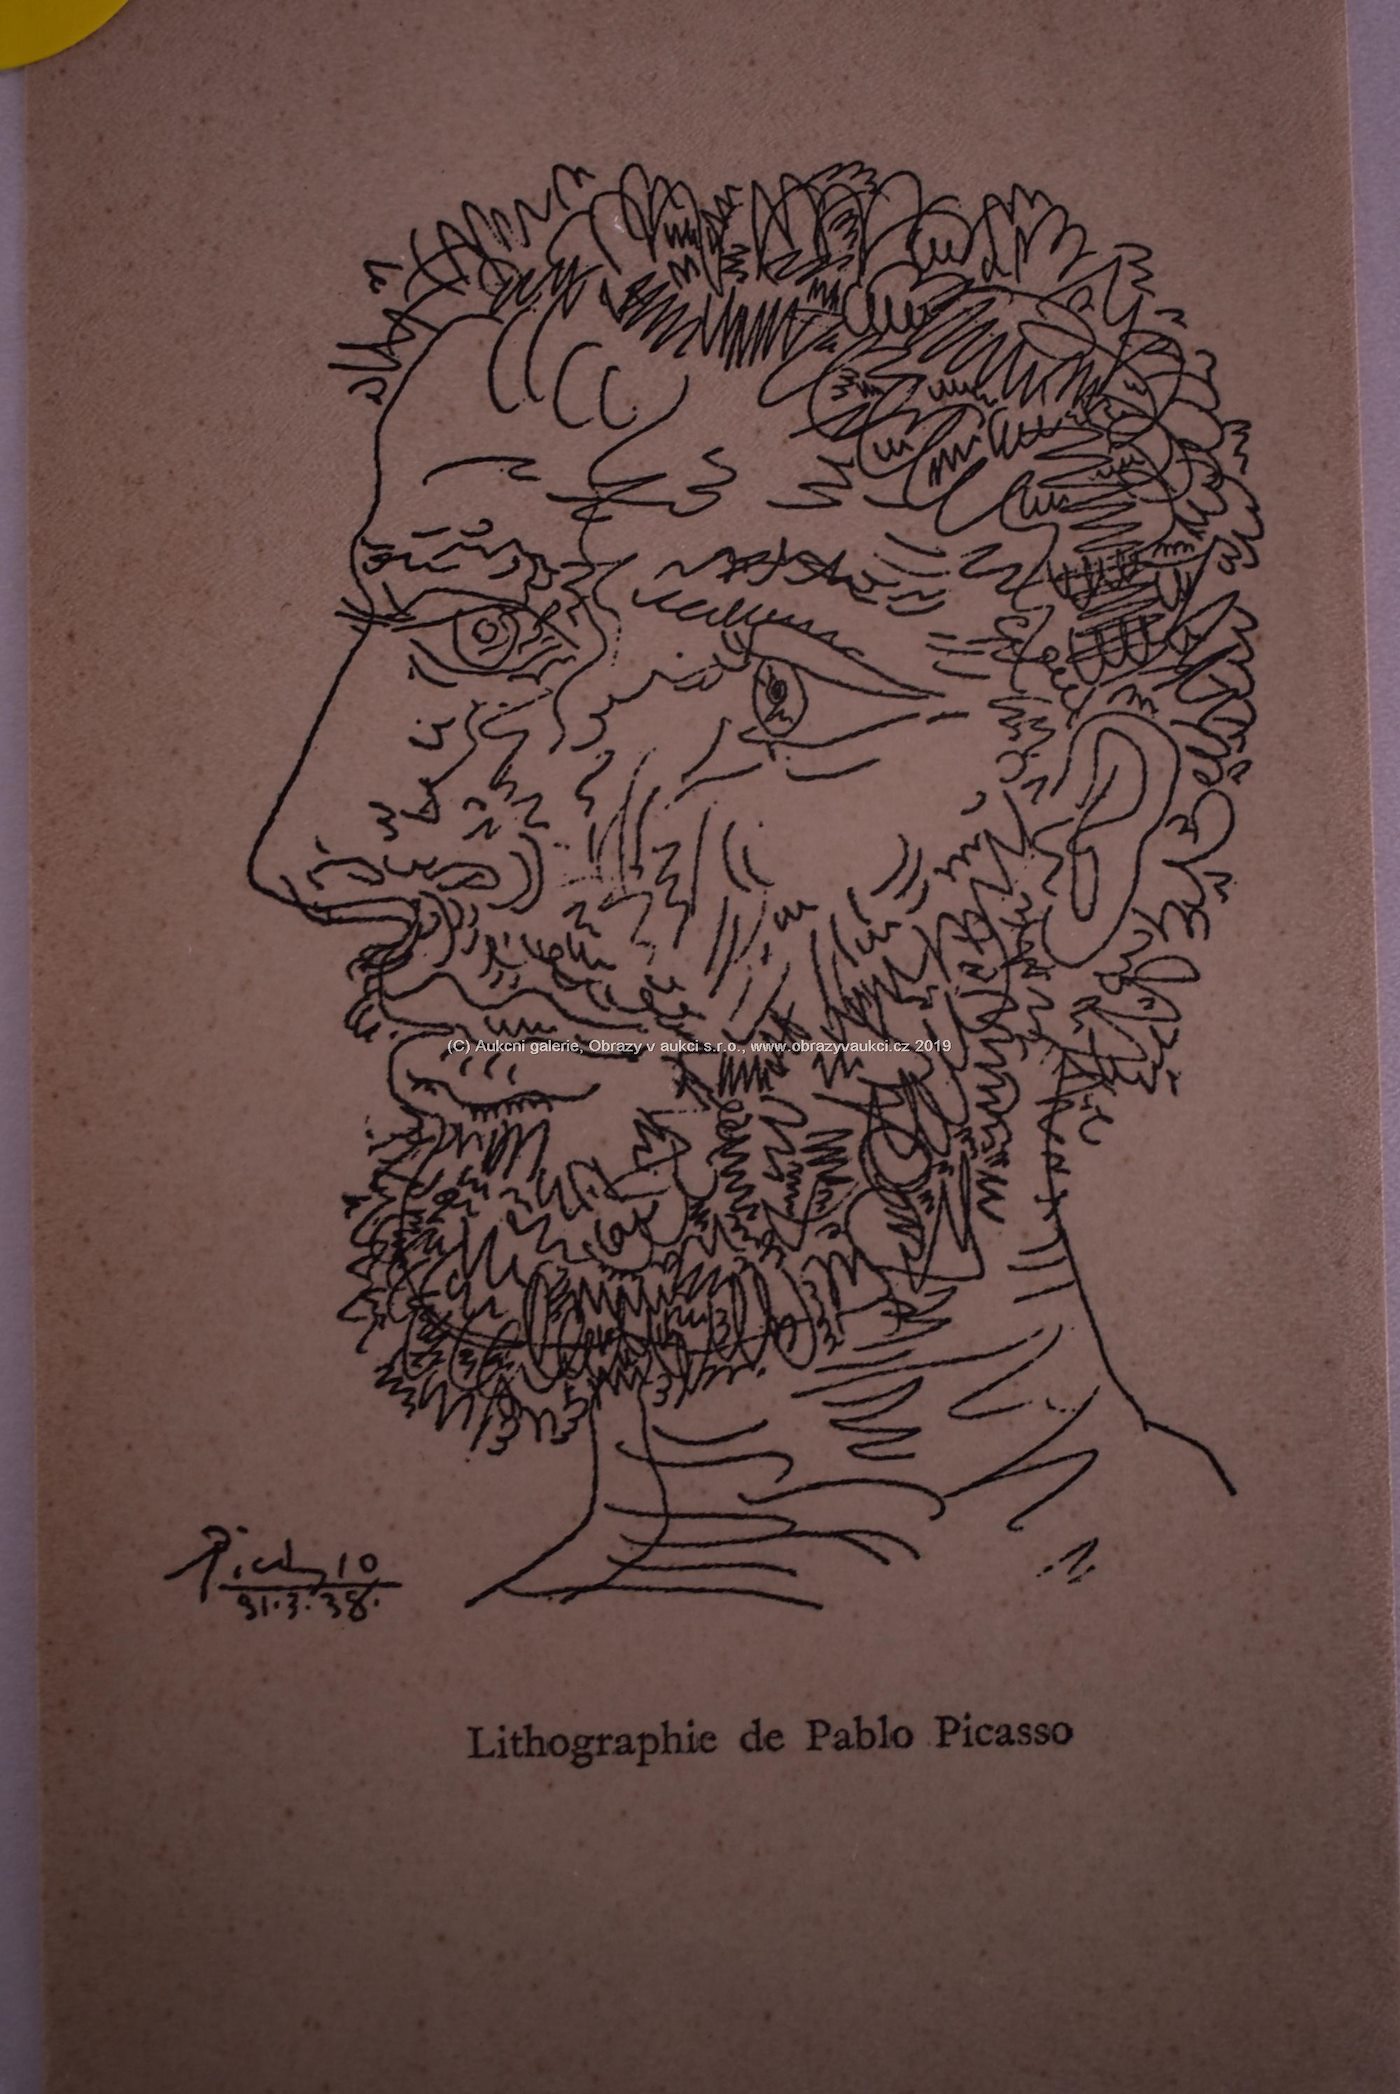 Pablo Picasso - Profil de homme - Profile of a Man